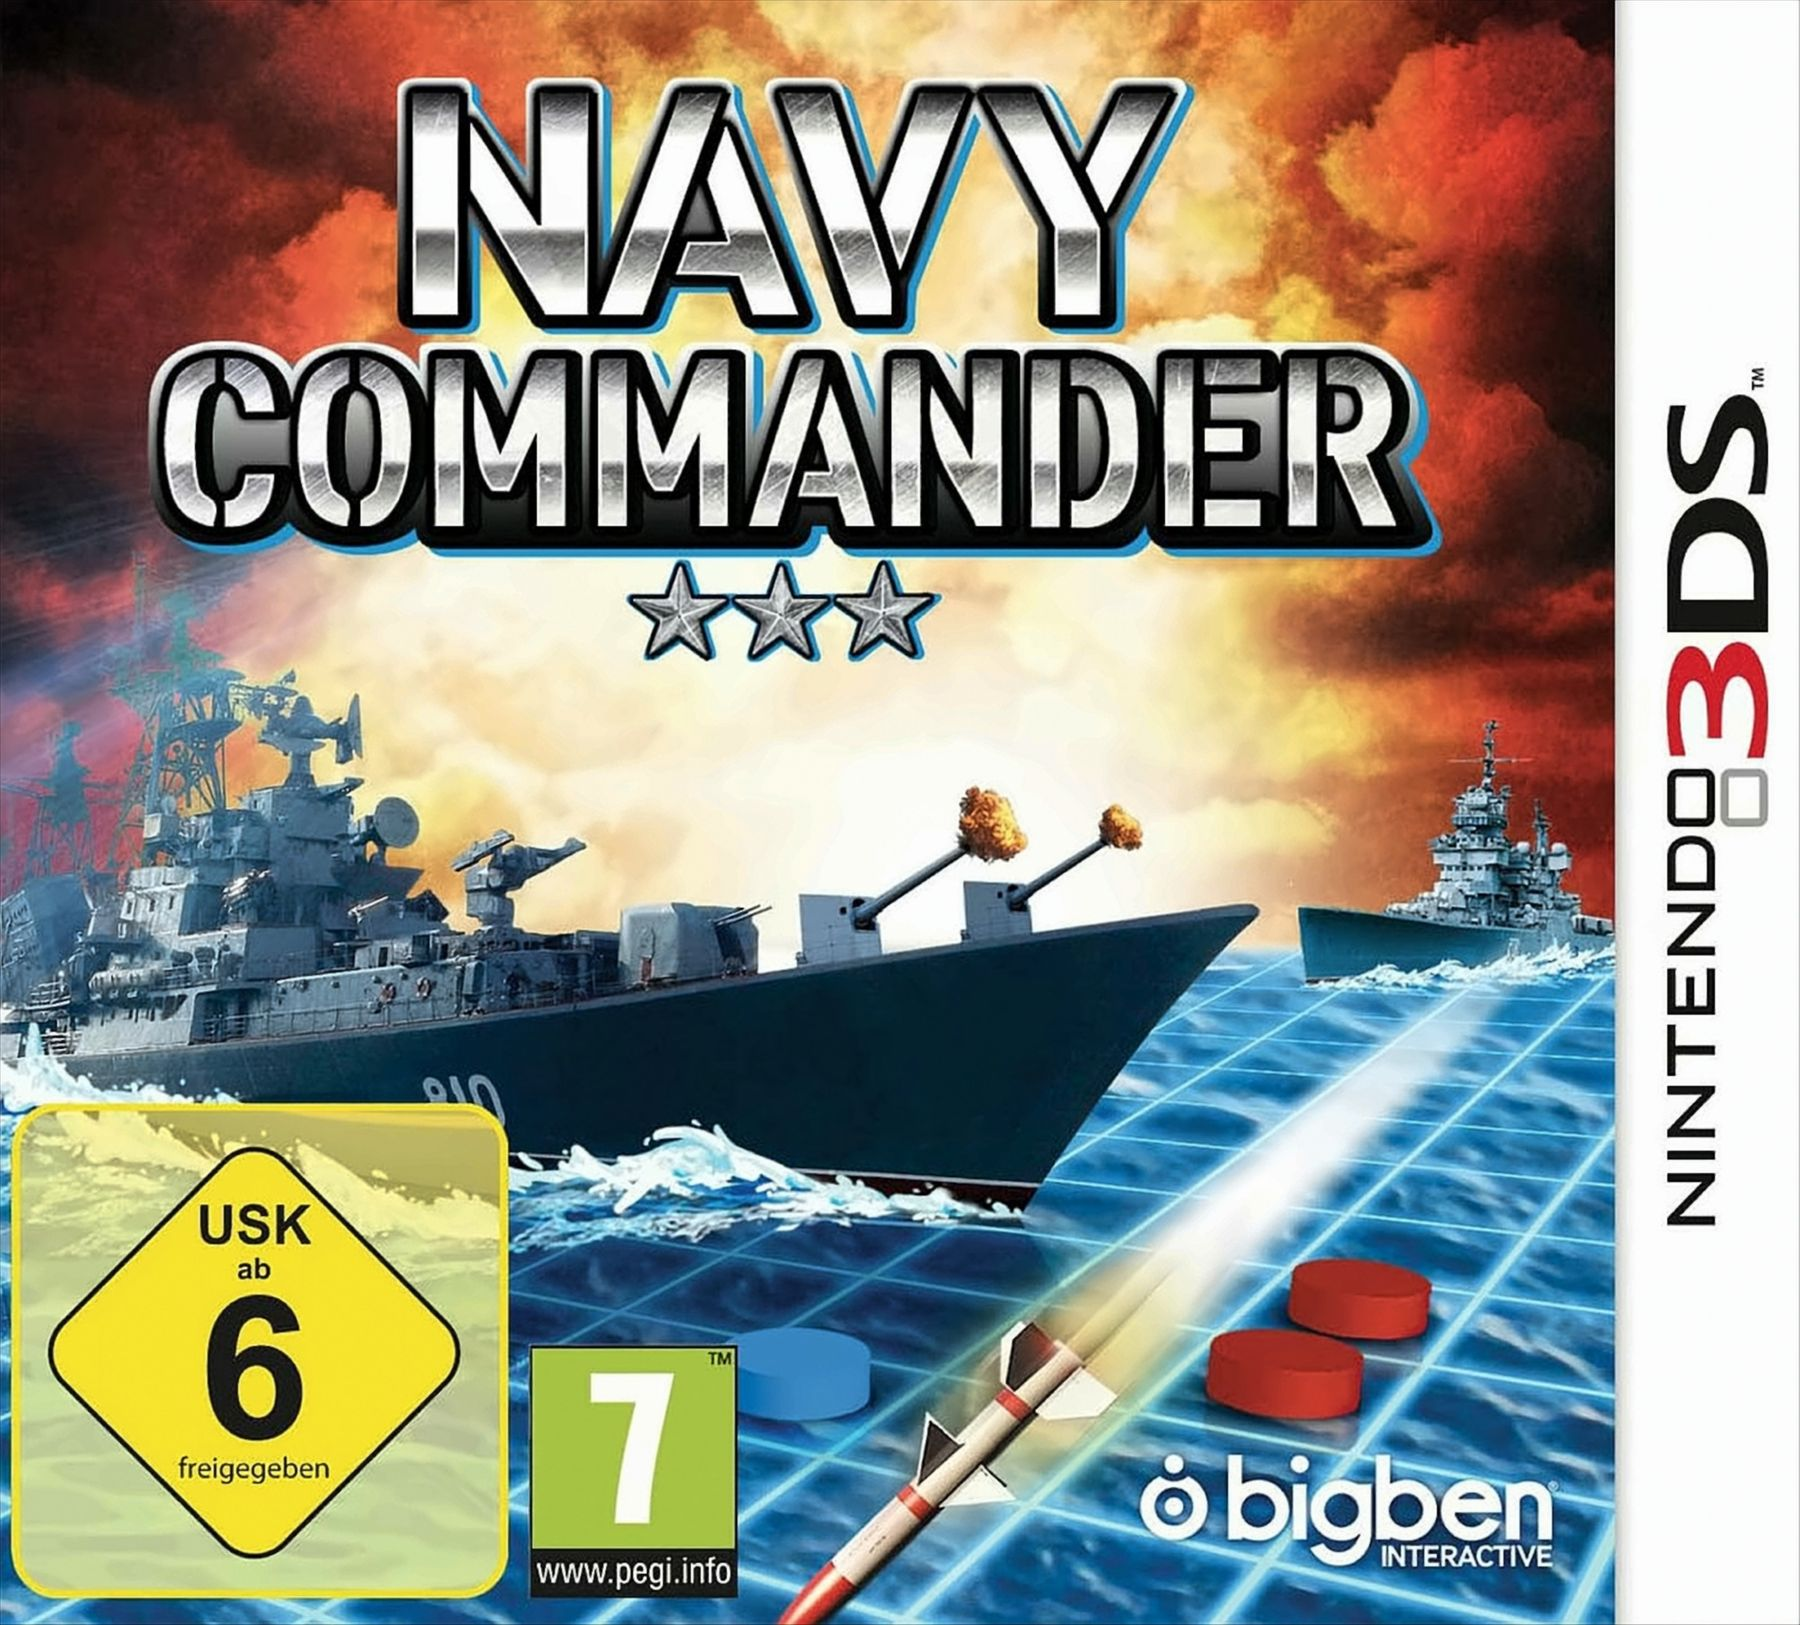 Commander - Navy 3DS] [Nintendo